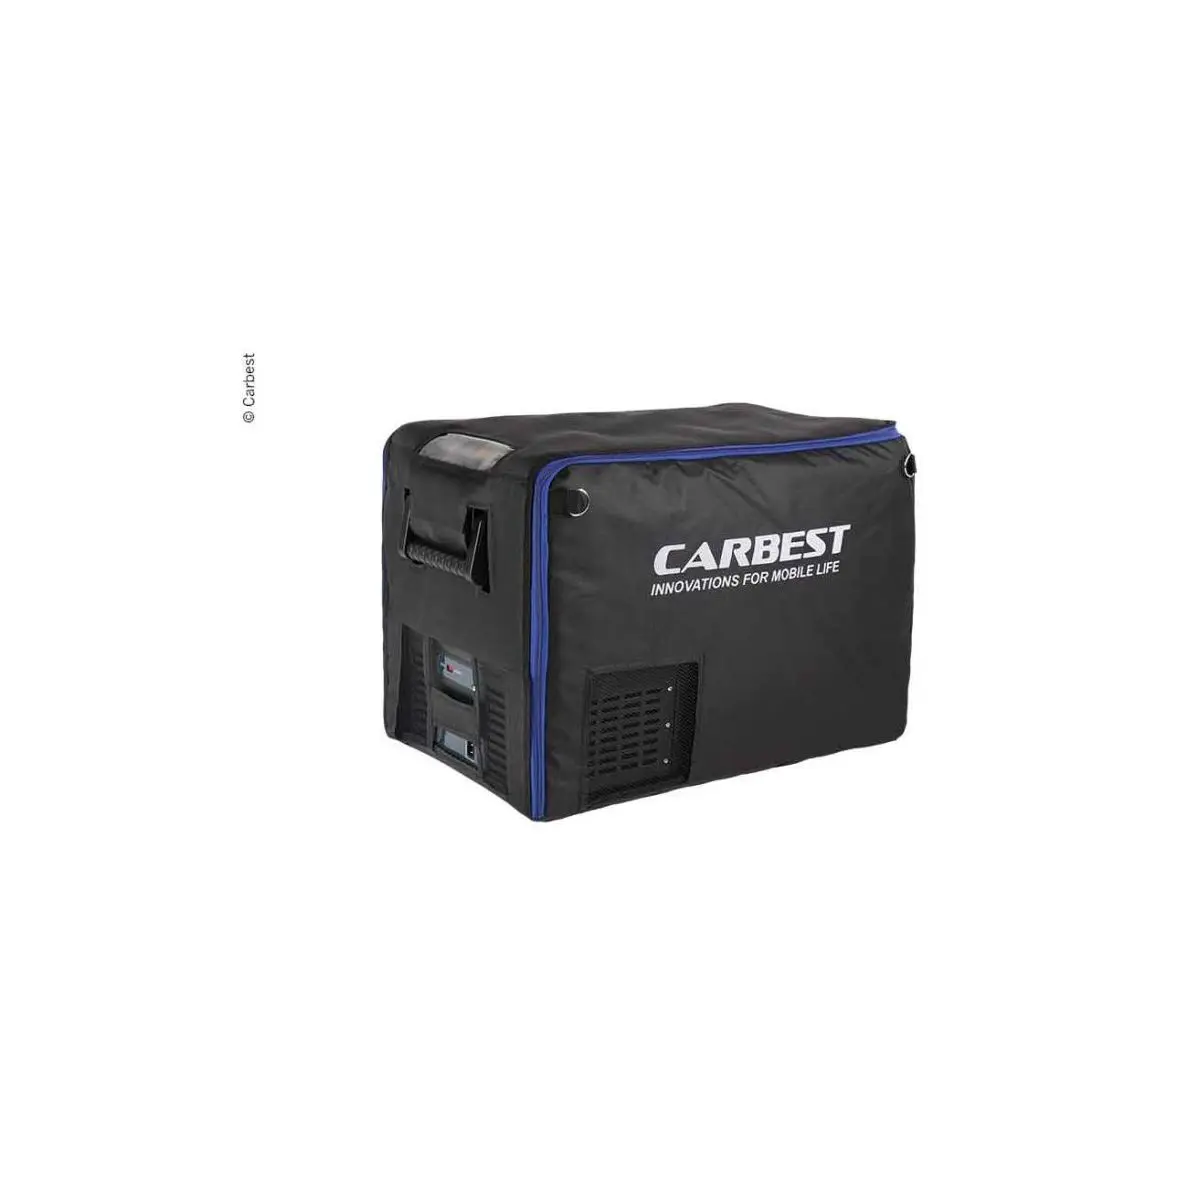 Kompresorový chladiaci box Carbest MaxiFreezer 50 l